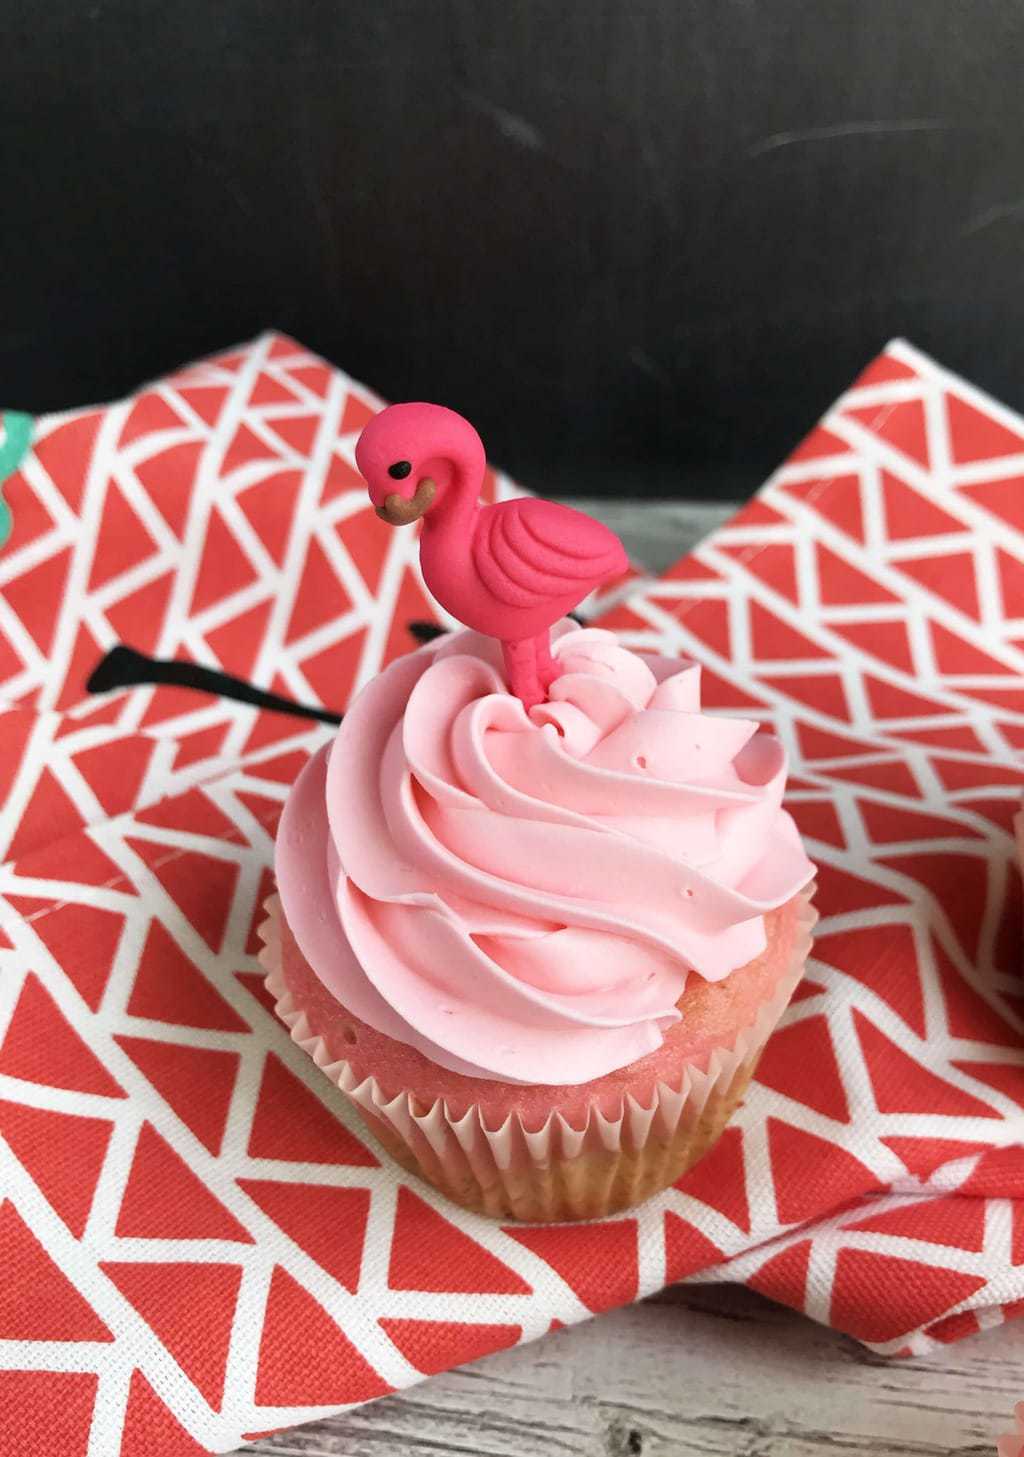 pink-flamingos